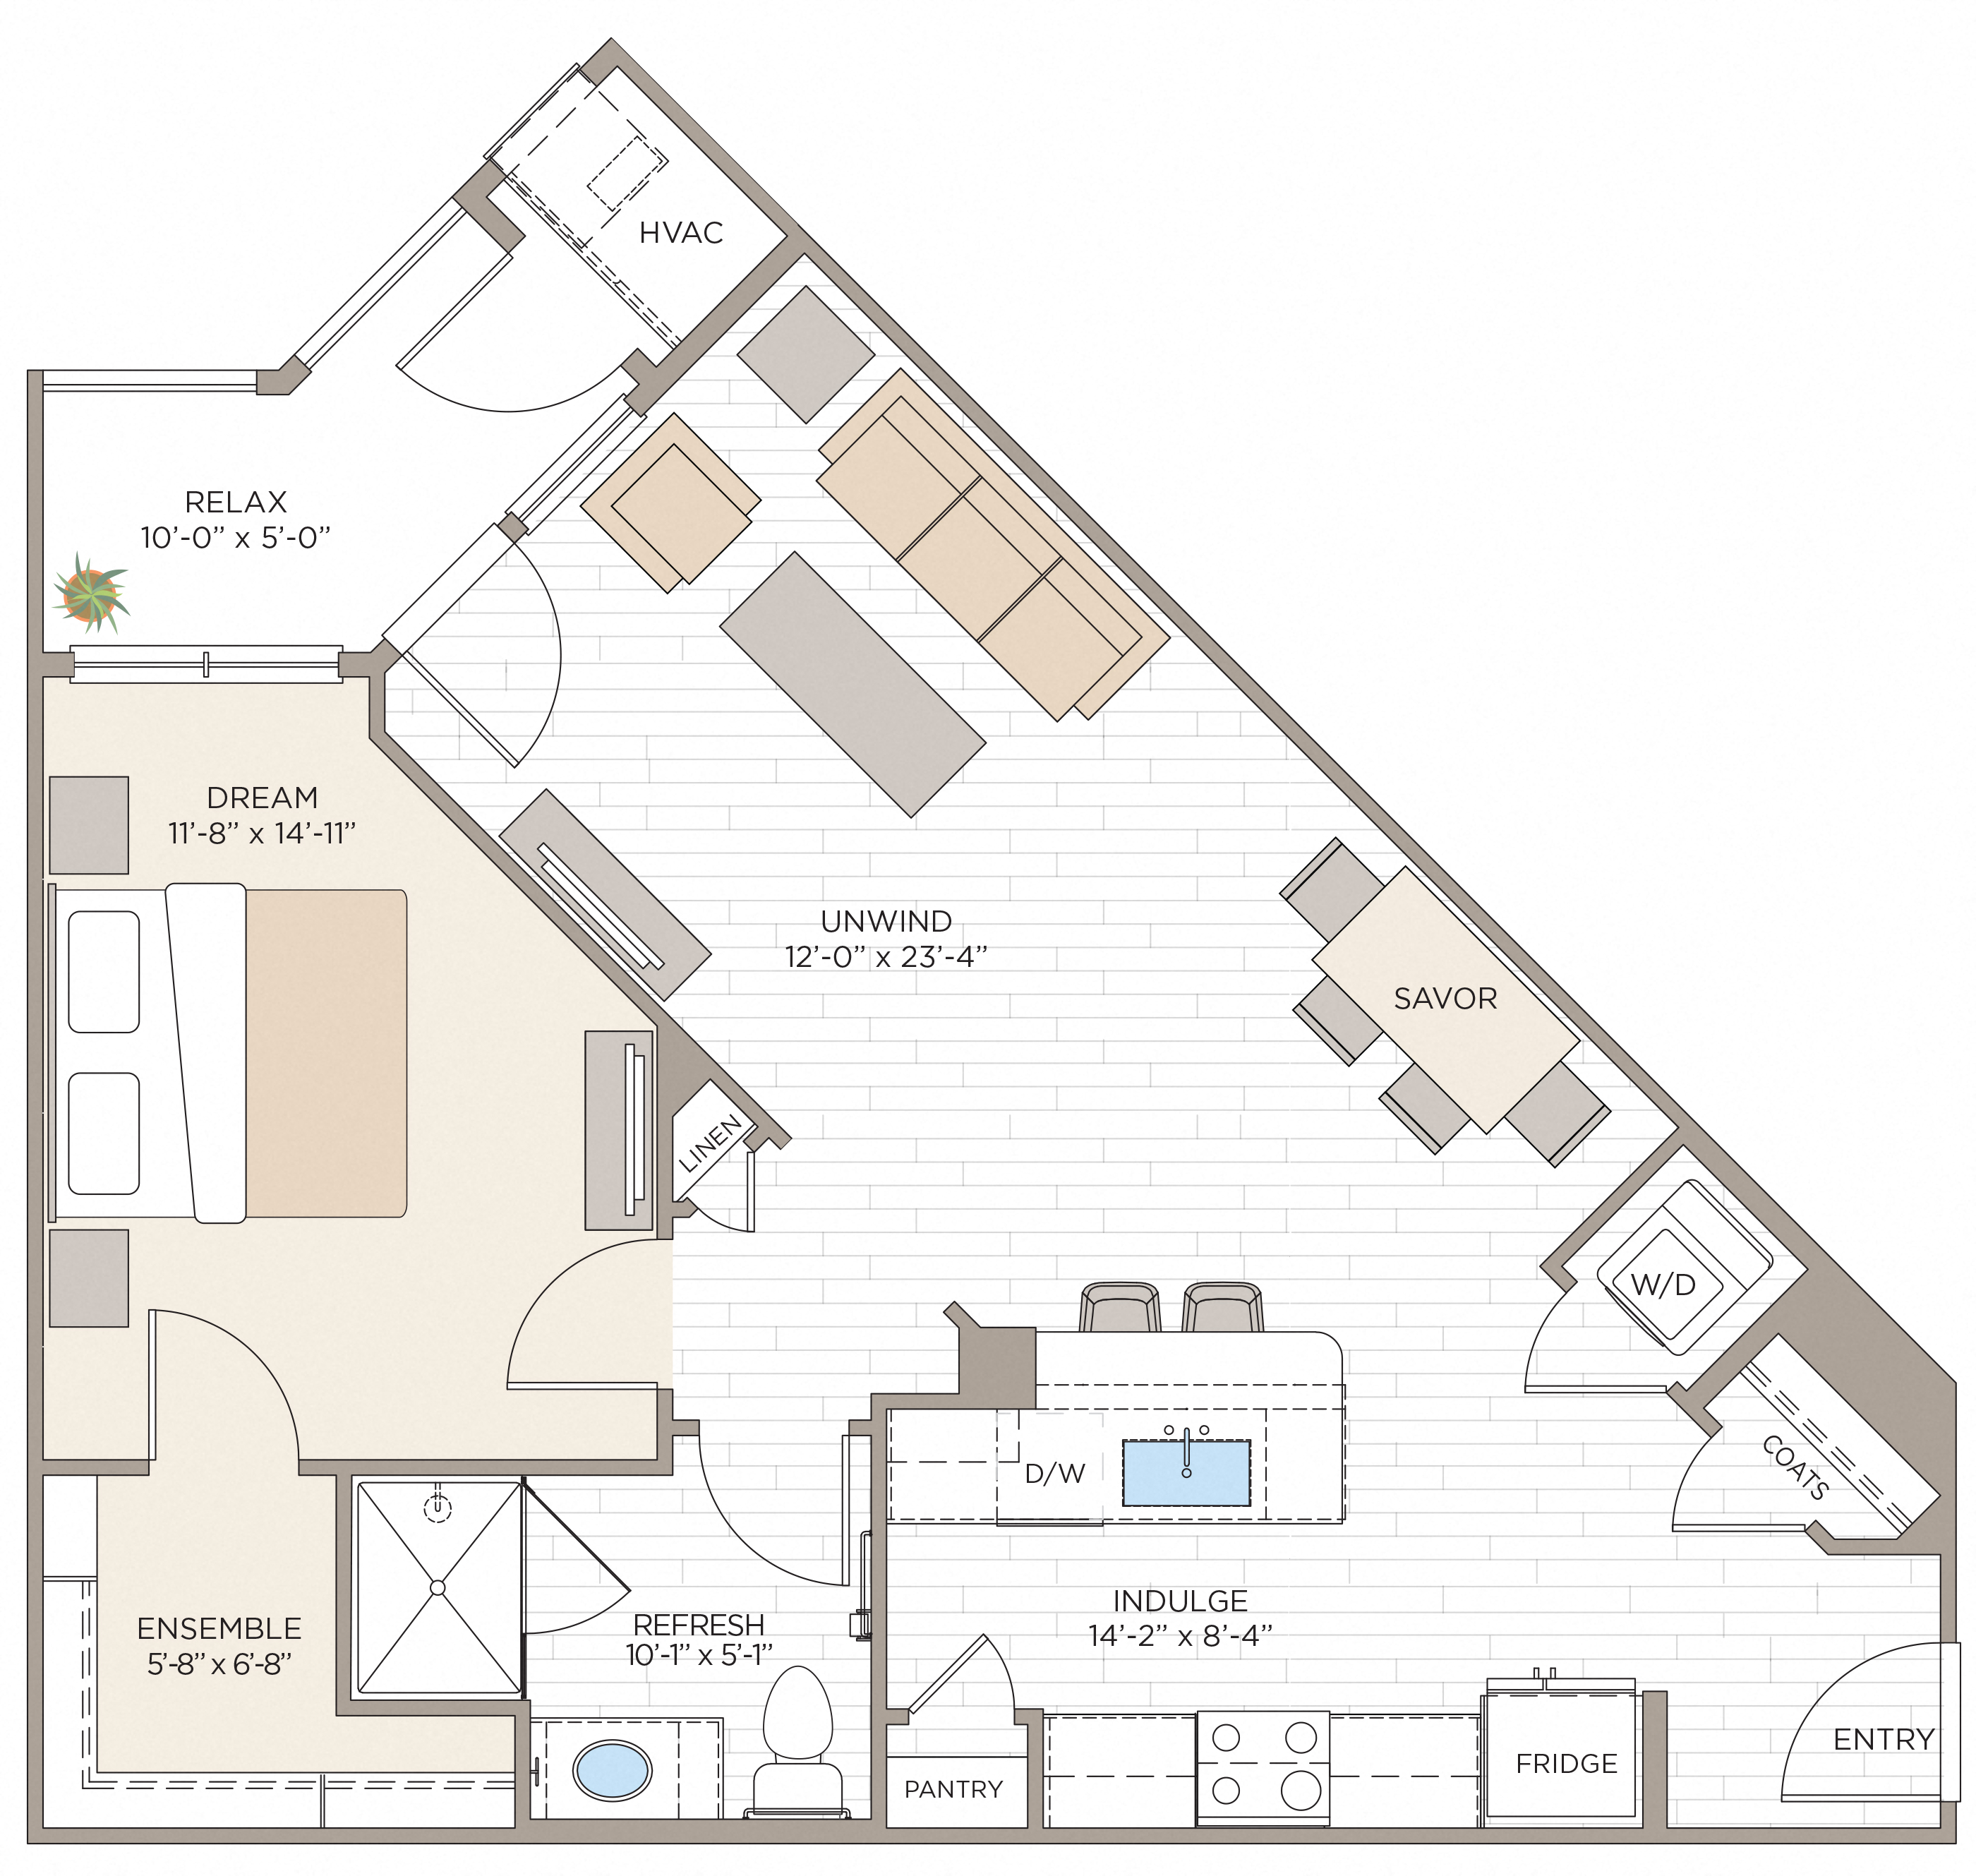 Floorplan for Apartment #14420, 1 bedroom unit at Halstead Maynard Crossing